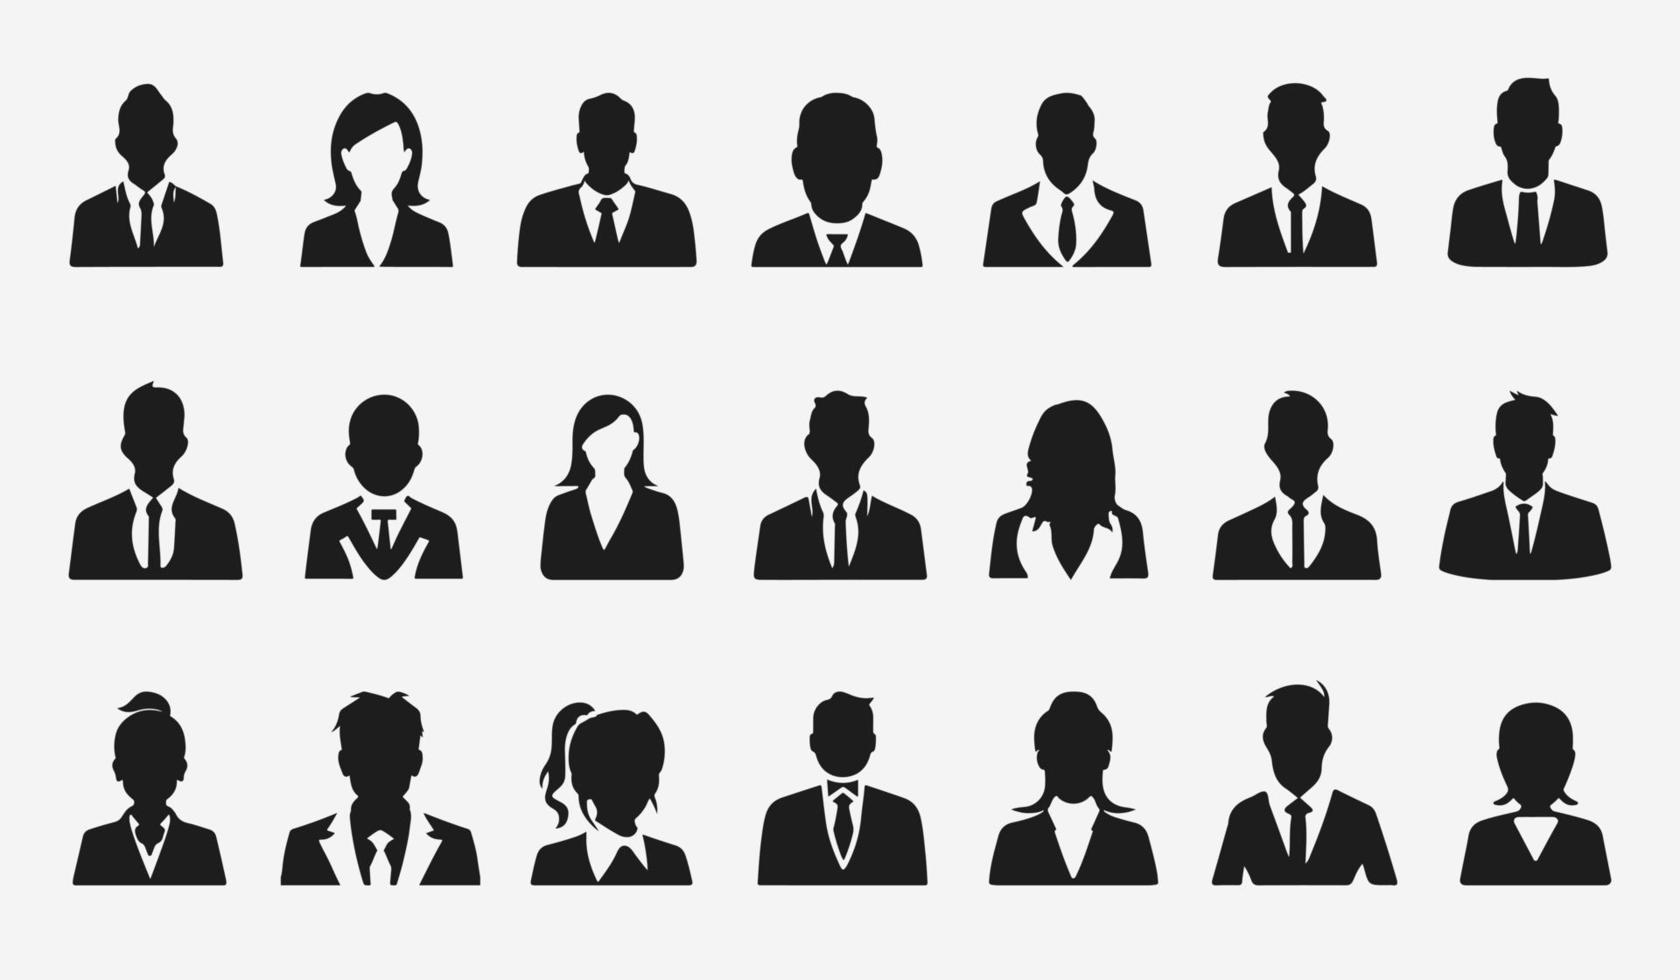 företag människor avatar profil huvud ikon silhuett uppsättning företag man kvinna användare ansikte avatars ikoner silhuetter vektor illustration